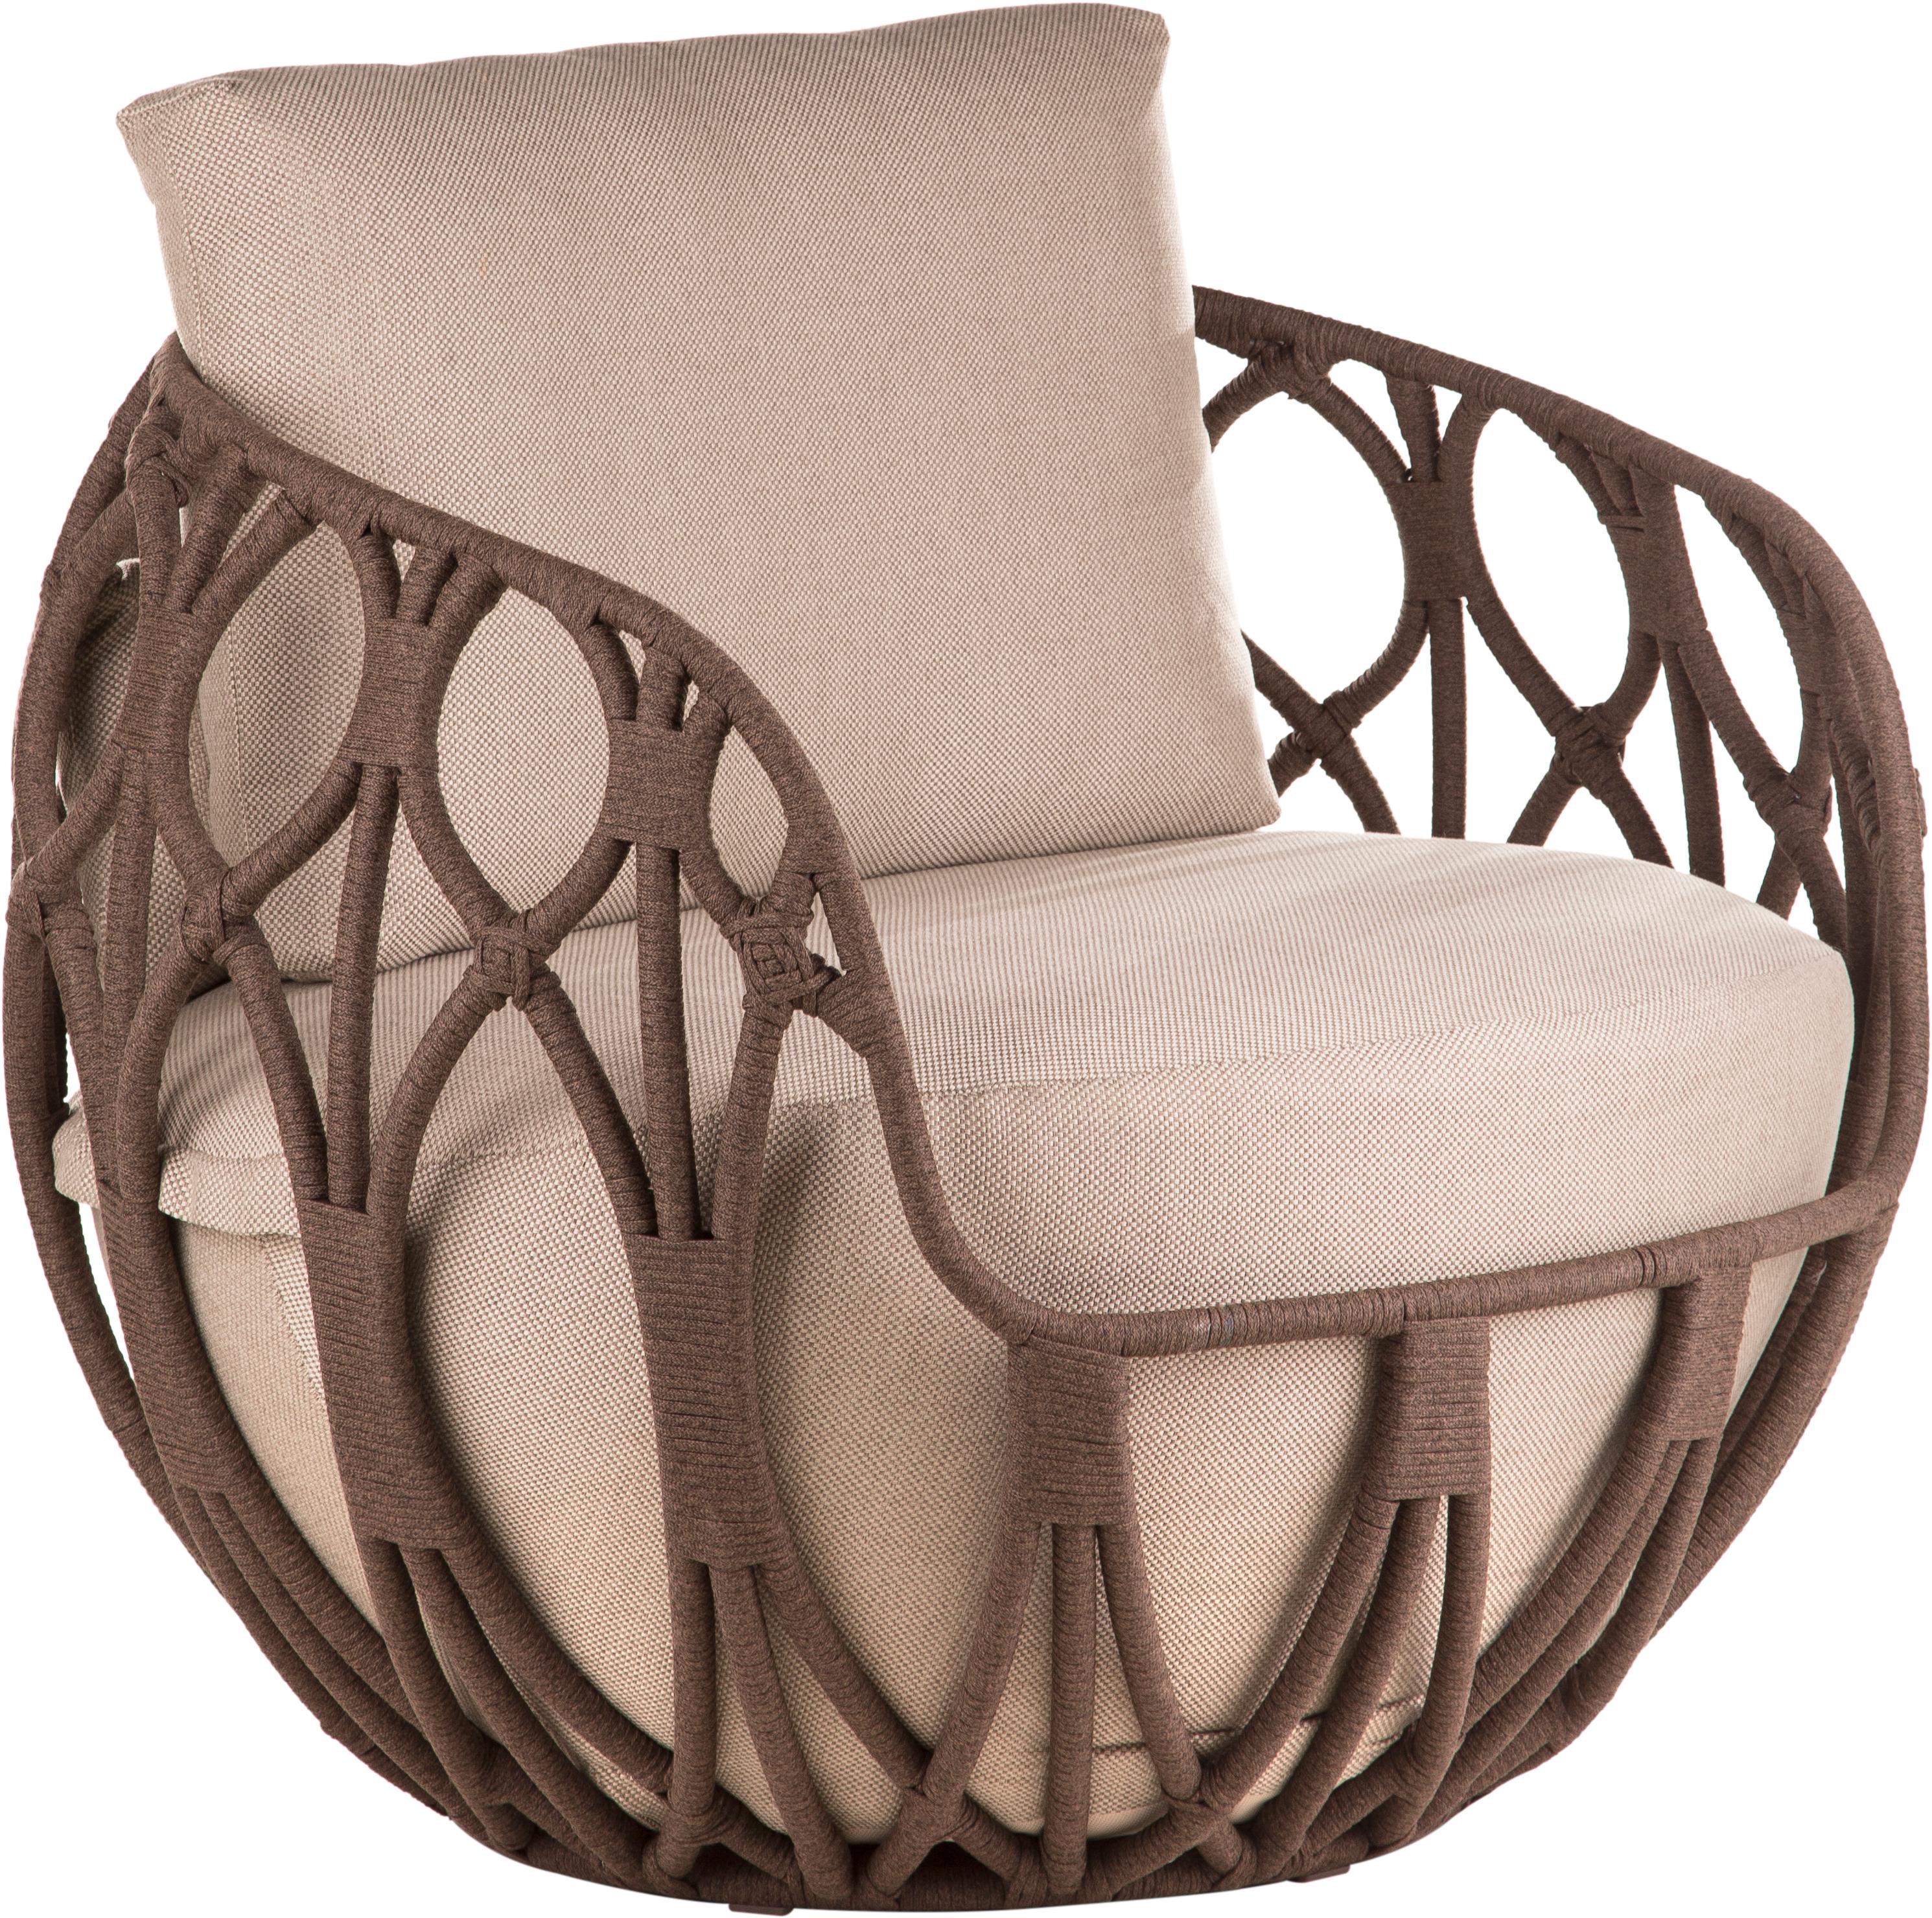 Dans le concept du fauteuil Tecoara, les lignes organiques sont courbées avec subtilité. Fluides, ils composent l'esthétique robuste qui équilibre légèreté et vigueur. Originaire de la famille linguistique tupi-guarani, le nom de la pièce comprend